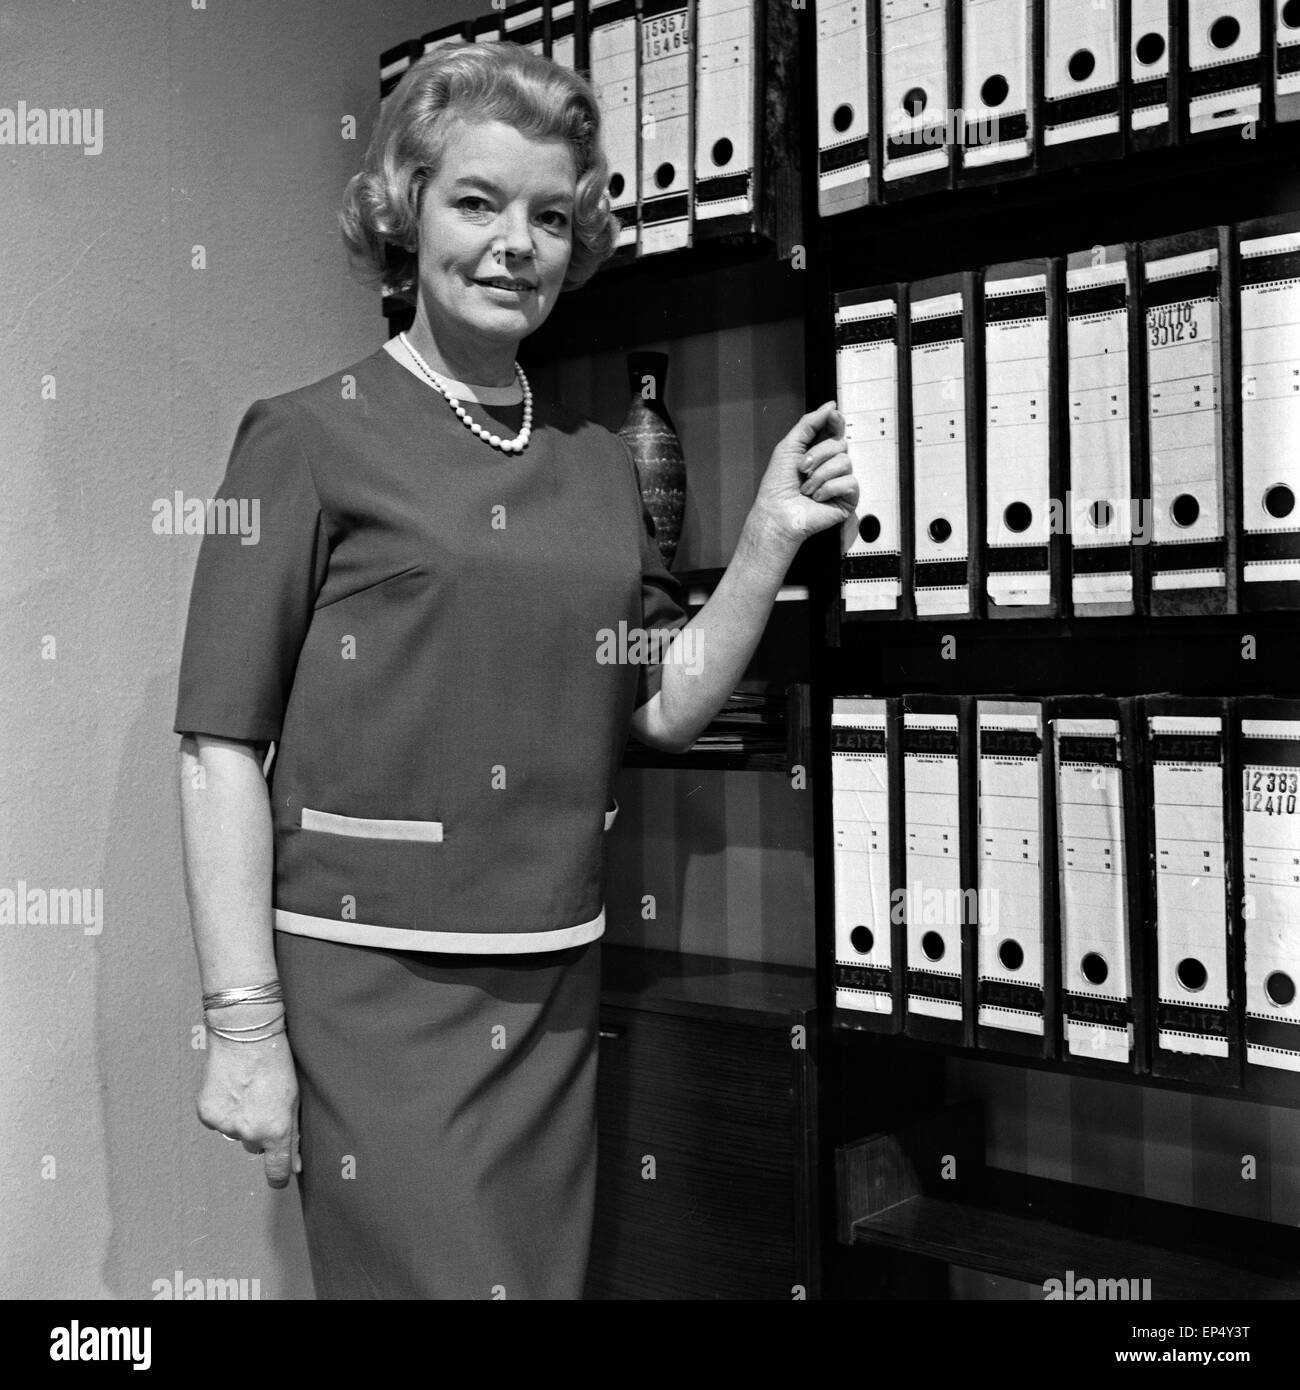 Präsentation modischer Kleidung für alle Lebenslagen, hier: Mode im Büro, Deutschland 1960er Jahre. Presentation of all day fash Stock Photo